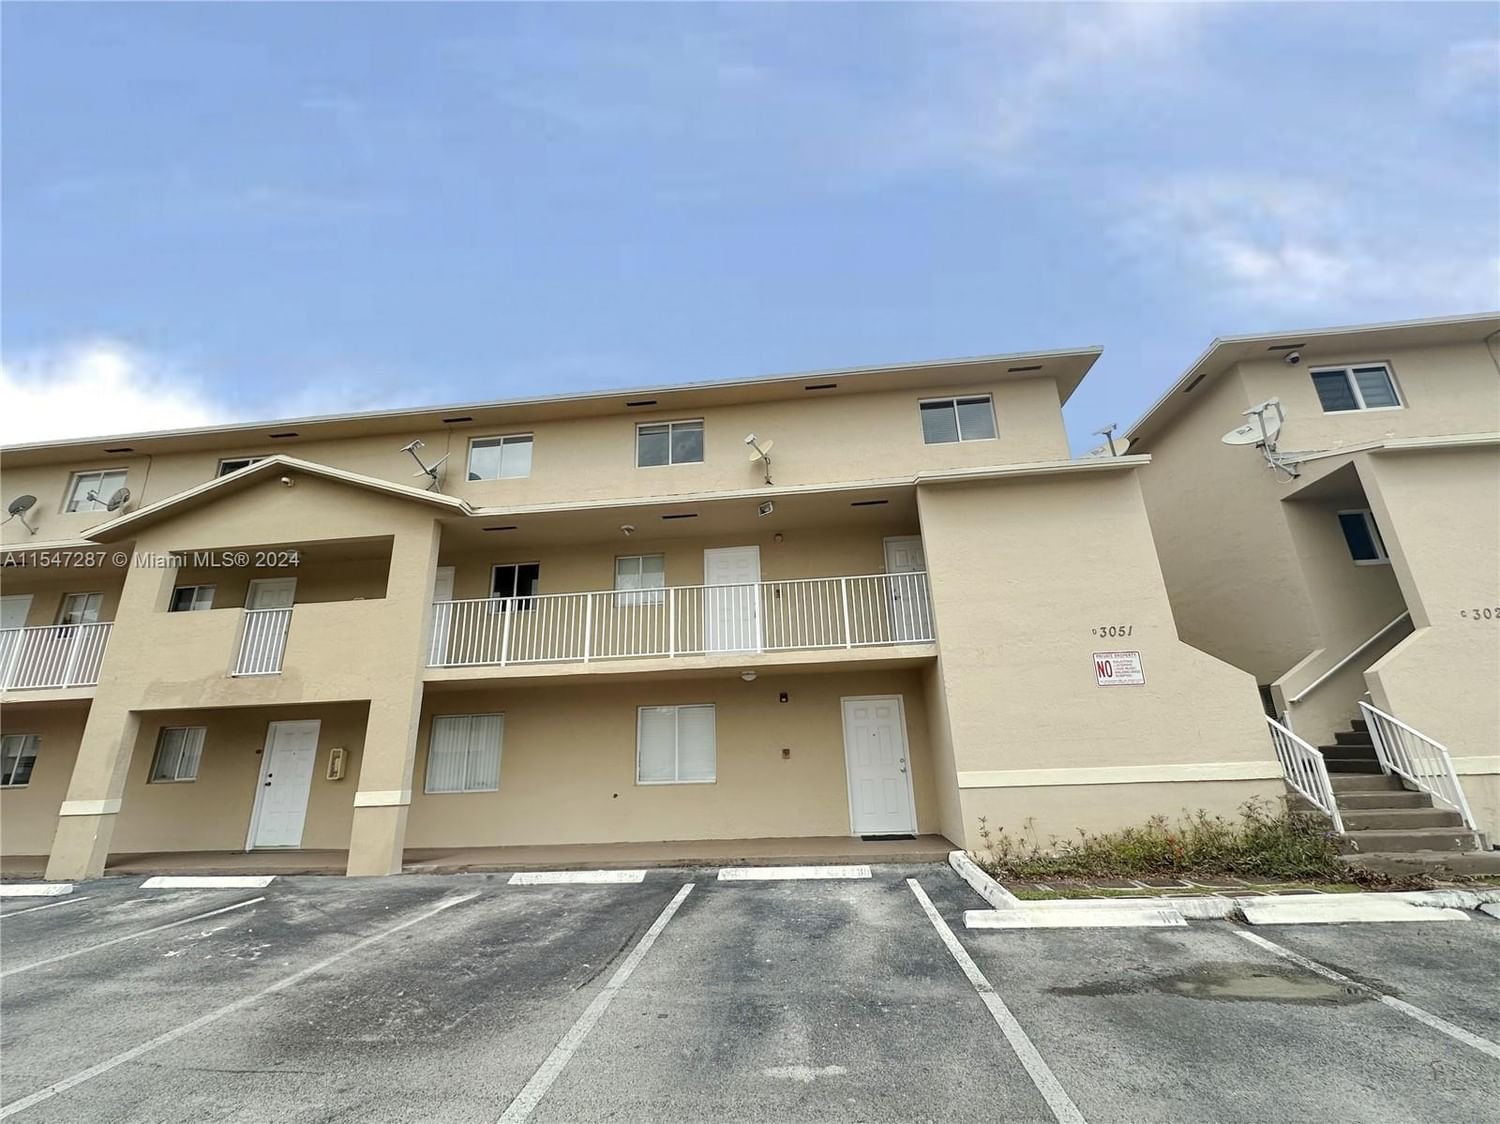 Real estate property located at 3051 76th St D-211, Miami-Dade County, VILLA VERANDA CONDO, Hialeah, FL